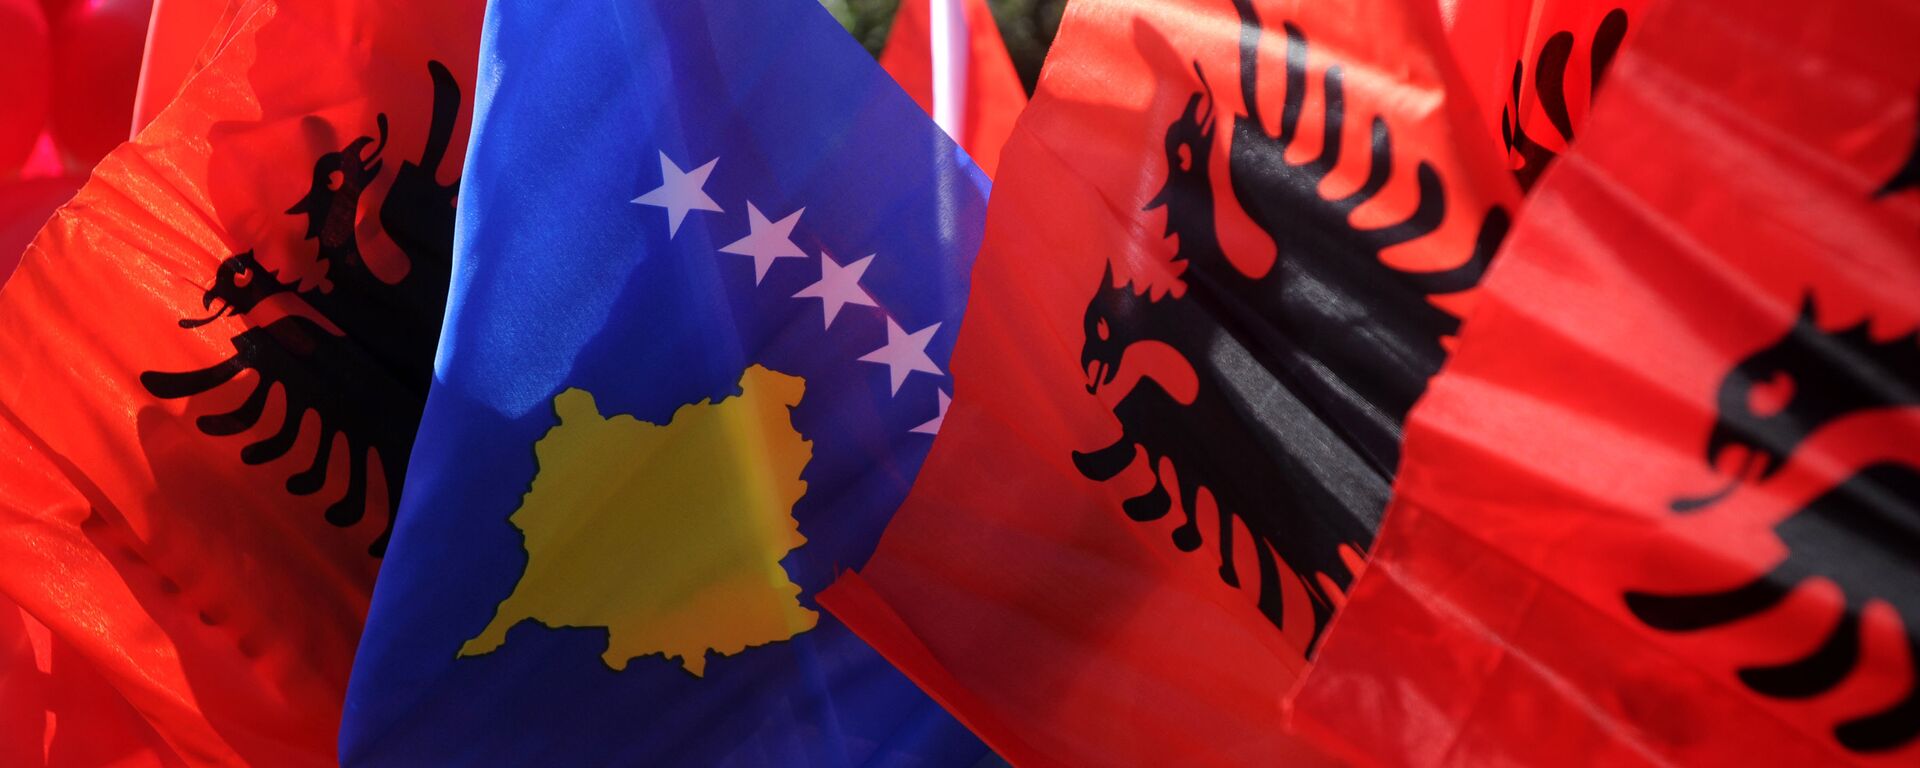 Zastave Albanije i Kosova - Sputnik Srbija, 1920, 24.10.2021